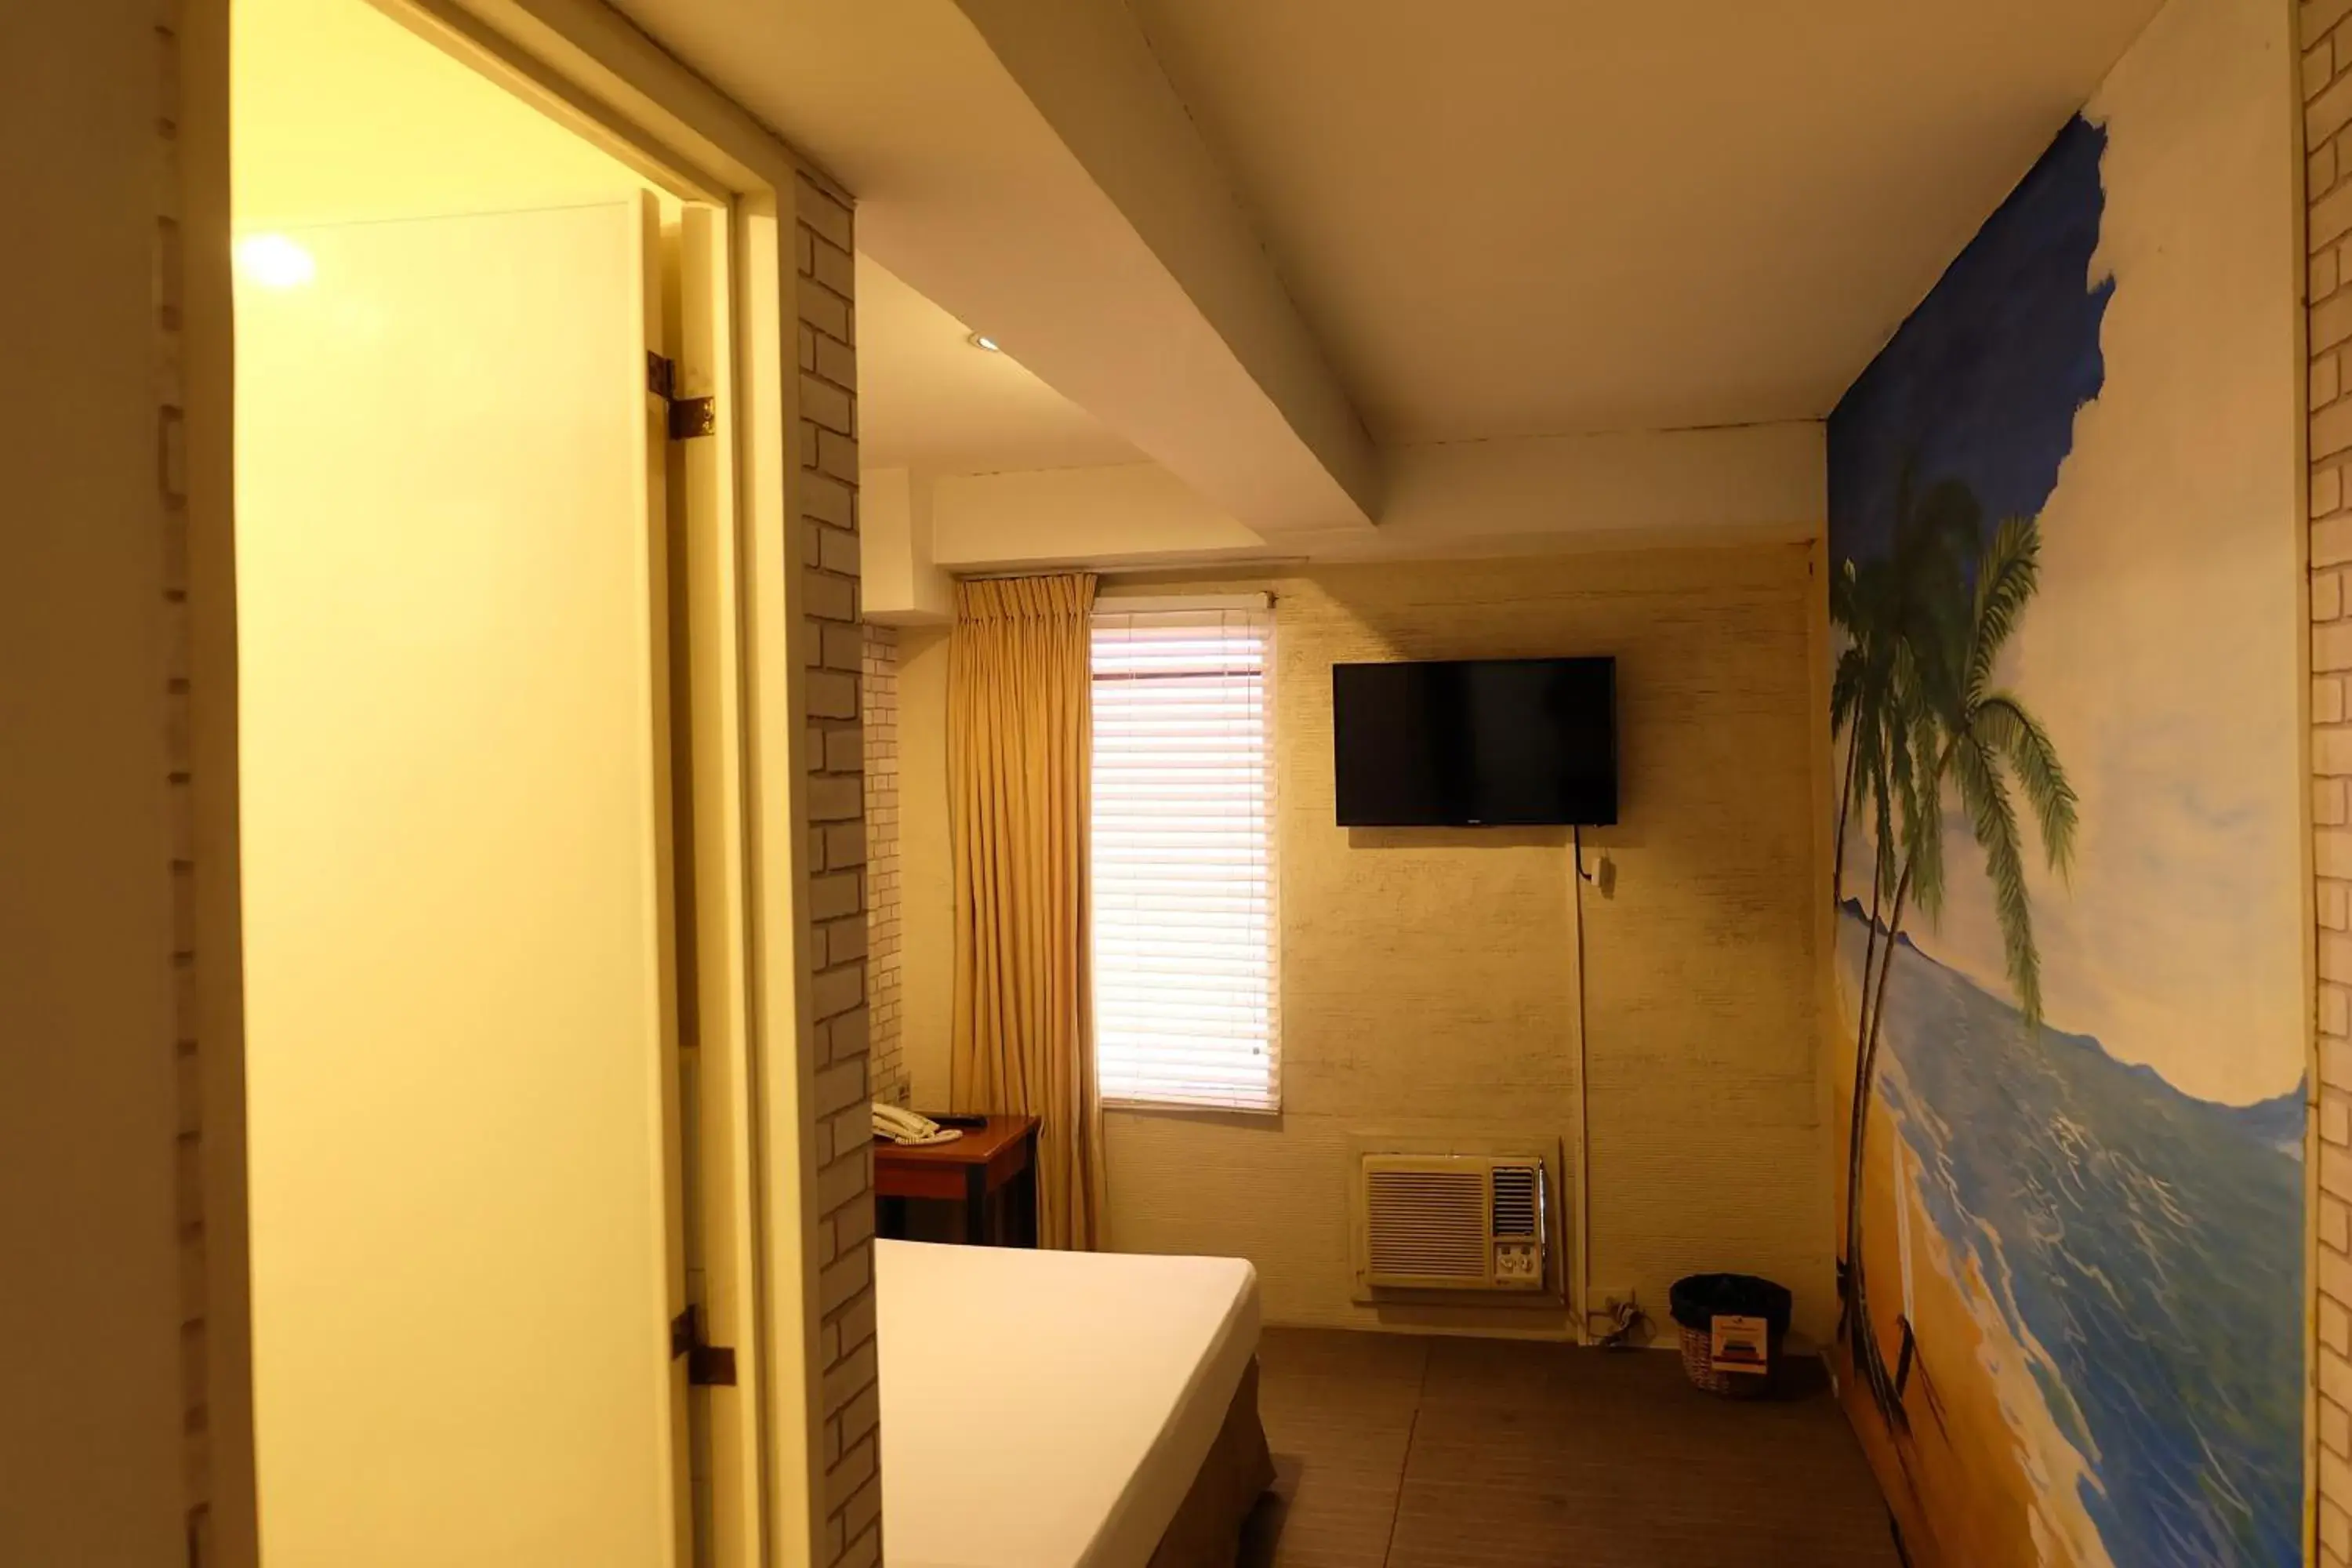 Bedroom, Bathroom in Spaces Hotel Makati - People & Pets